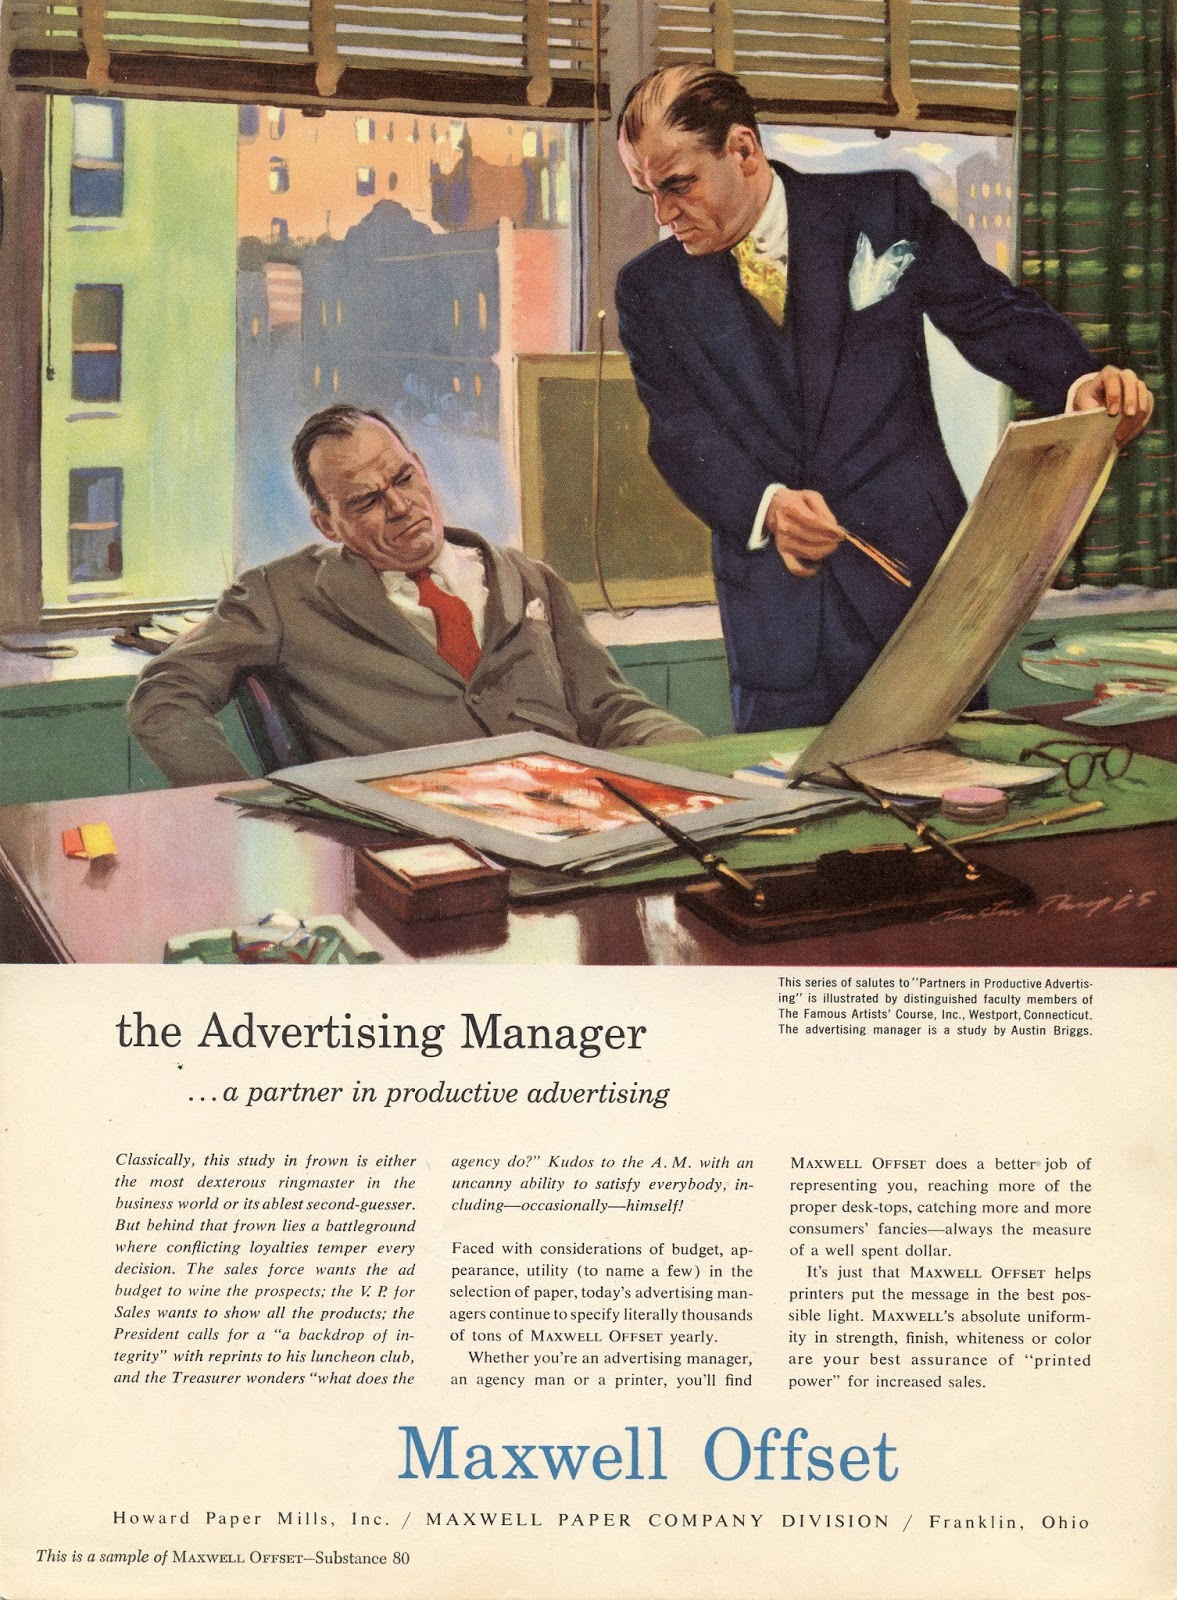 ILLUSTRATION ART: MAKING ADVERTISING ART IN THE 1950s